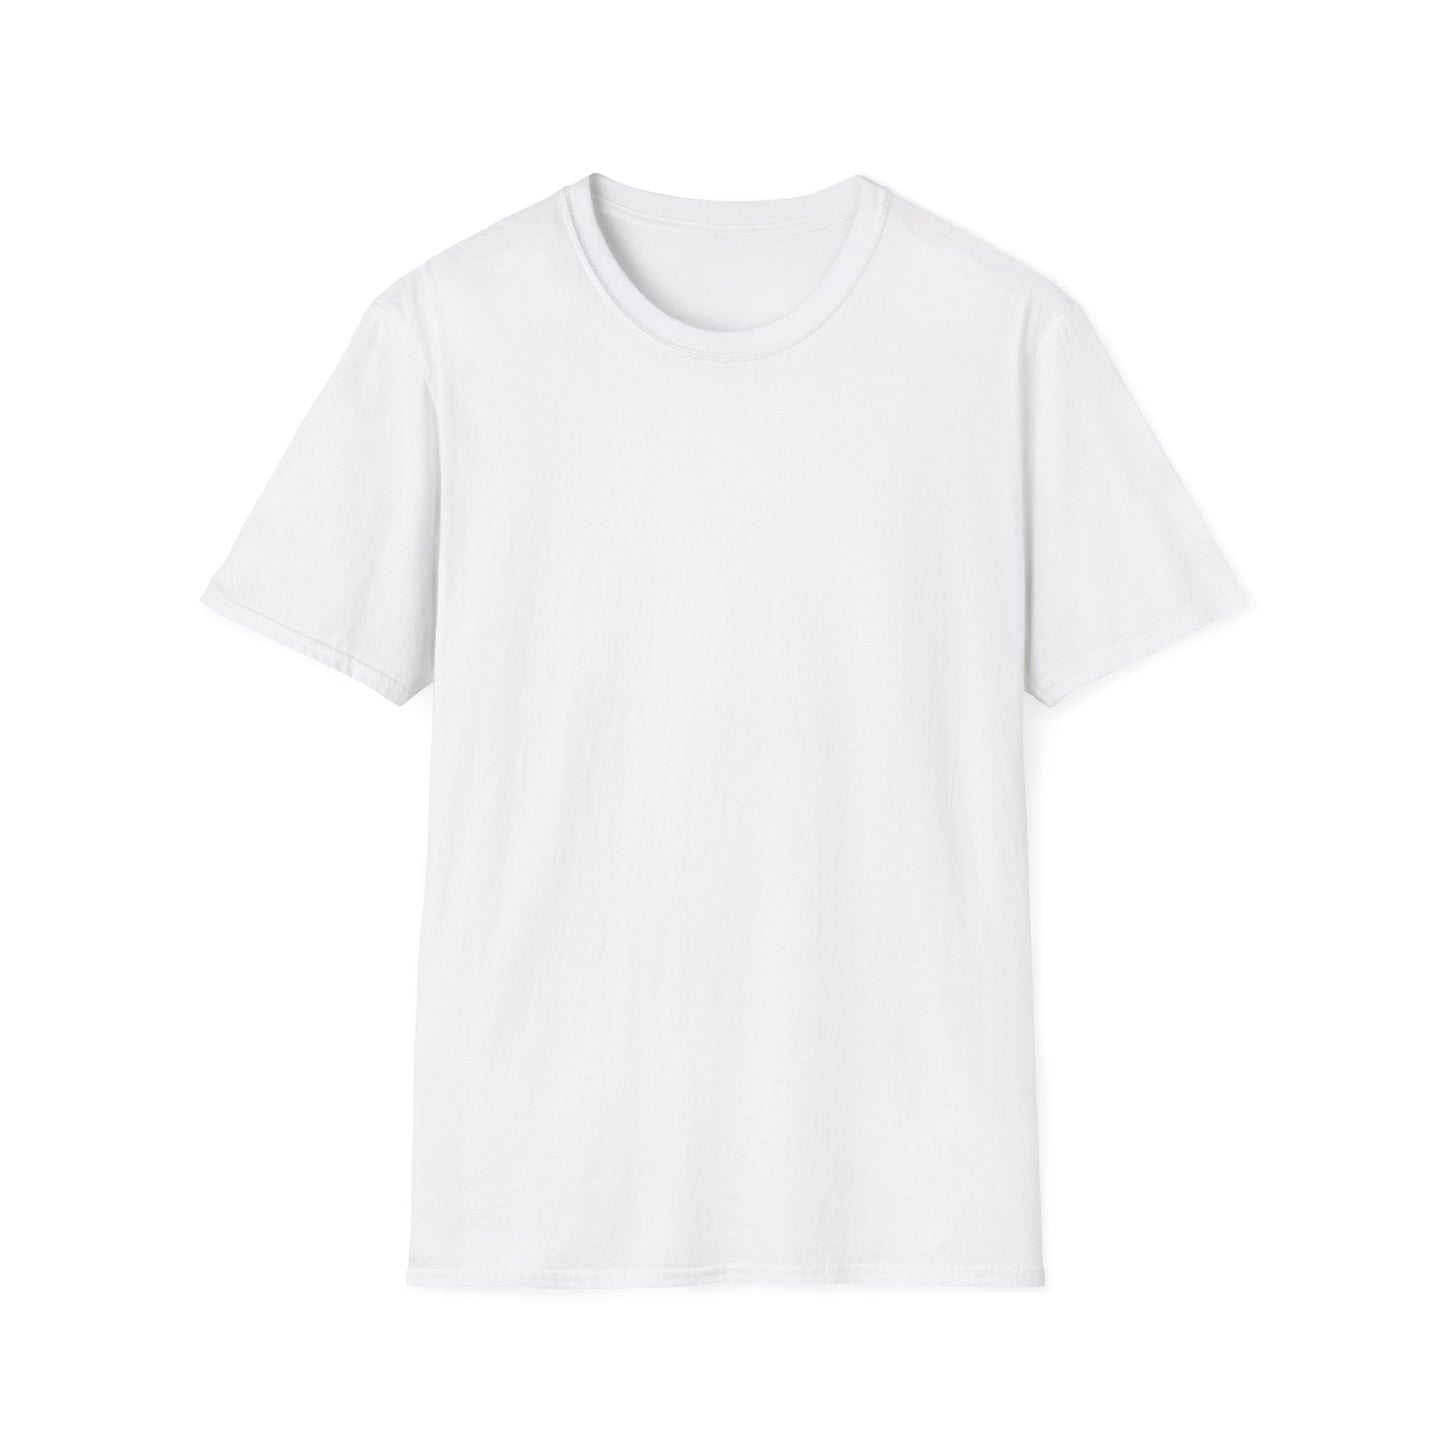 Prayer Warrior Cross Heart Women's Relaxed/Plus Tshirt (White Logo)